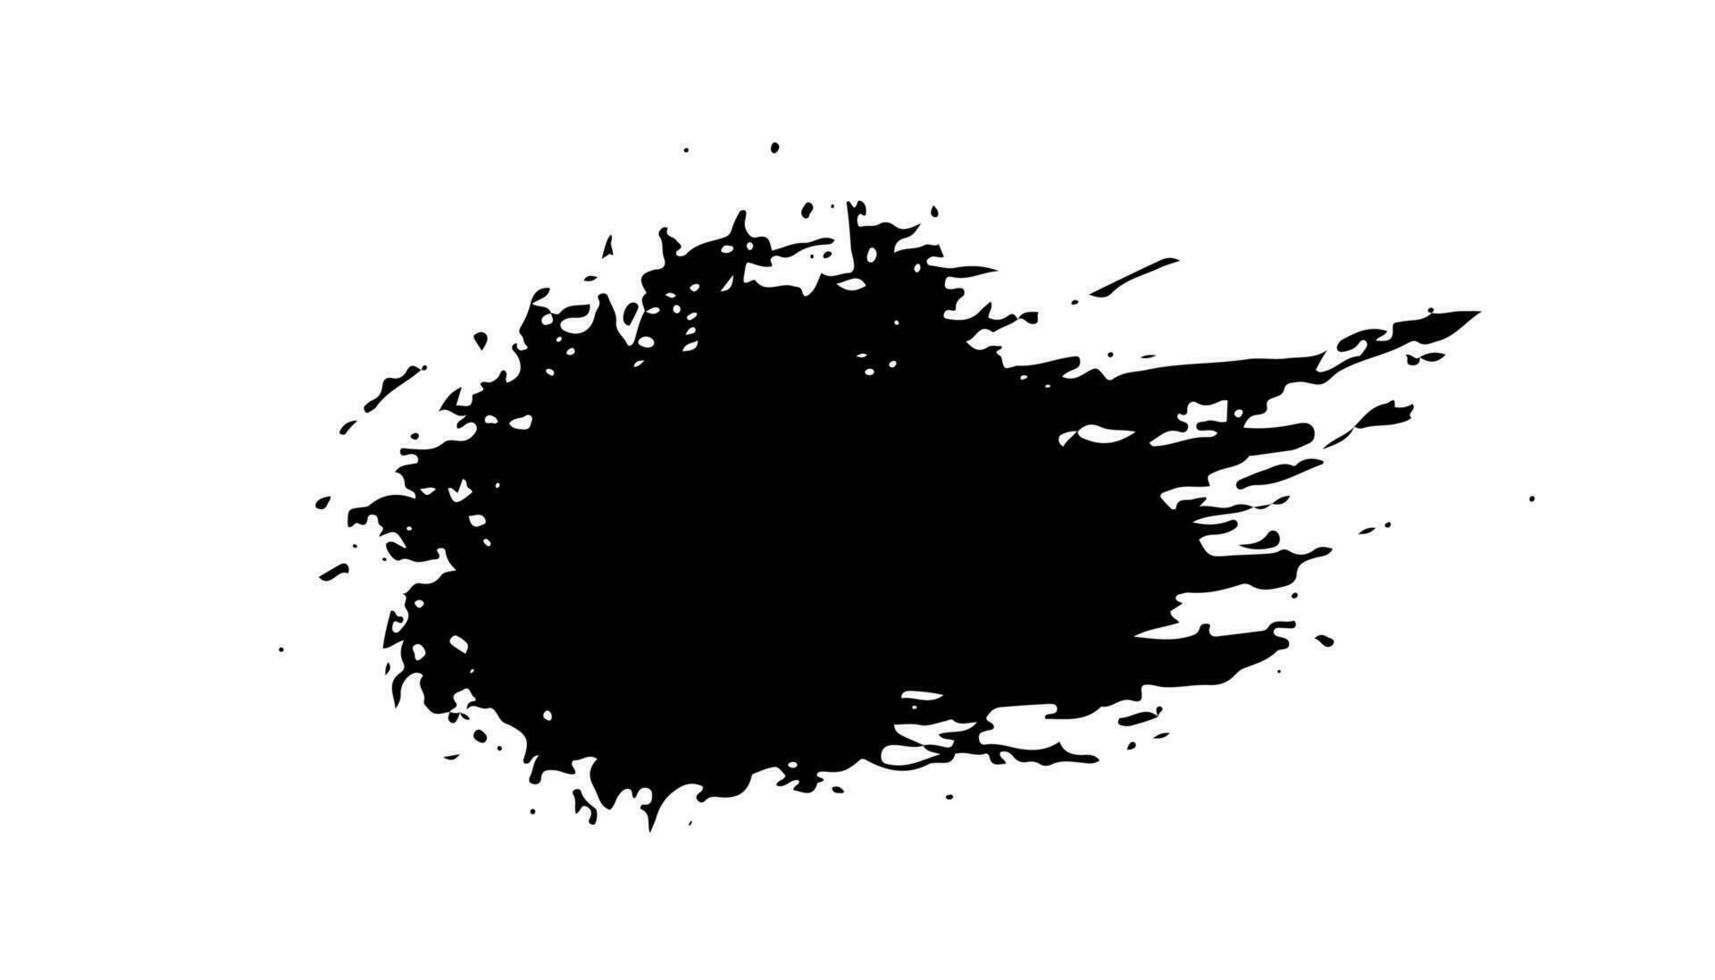 schwarz Fleck Bürste, Grunge Banner, Hand gezeichnet Spritzen. Grunge Abzeichen Bürste, Hand gezeichnet schwarz vektor